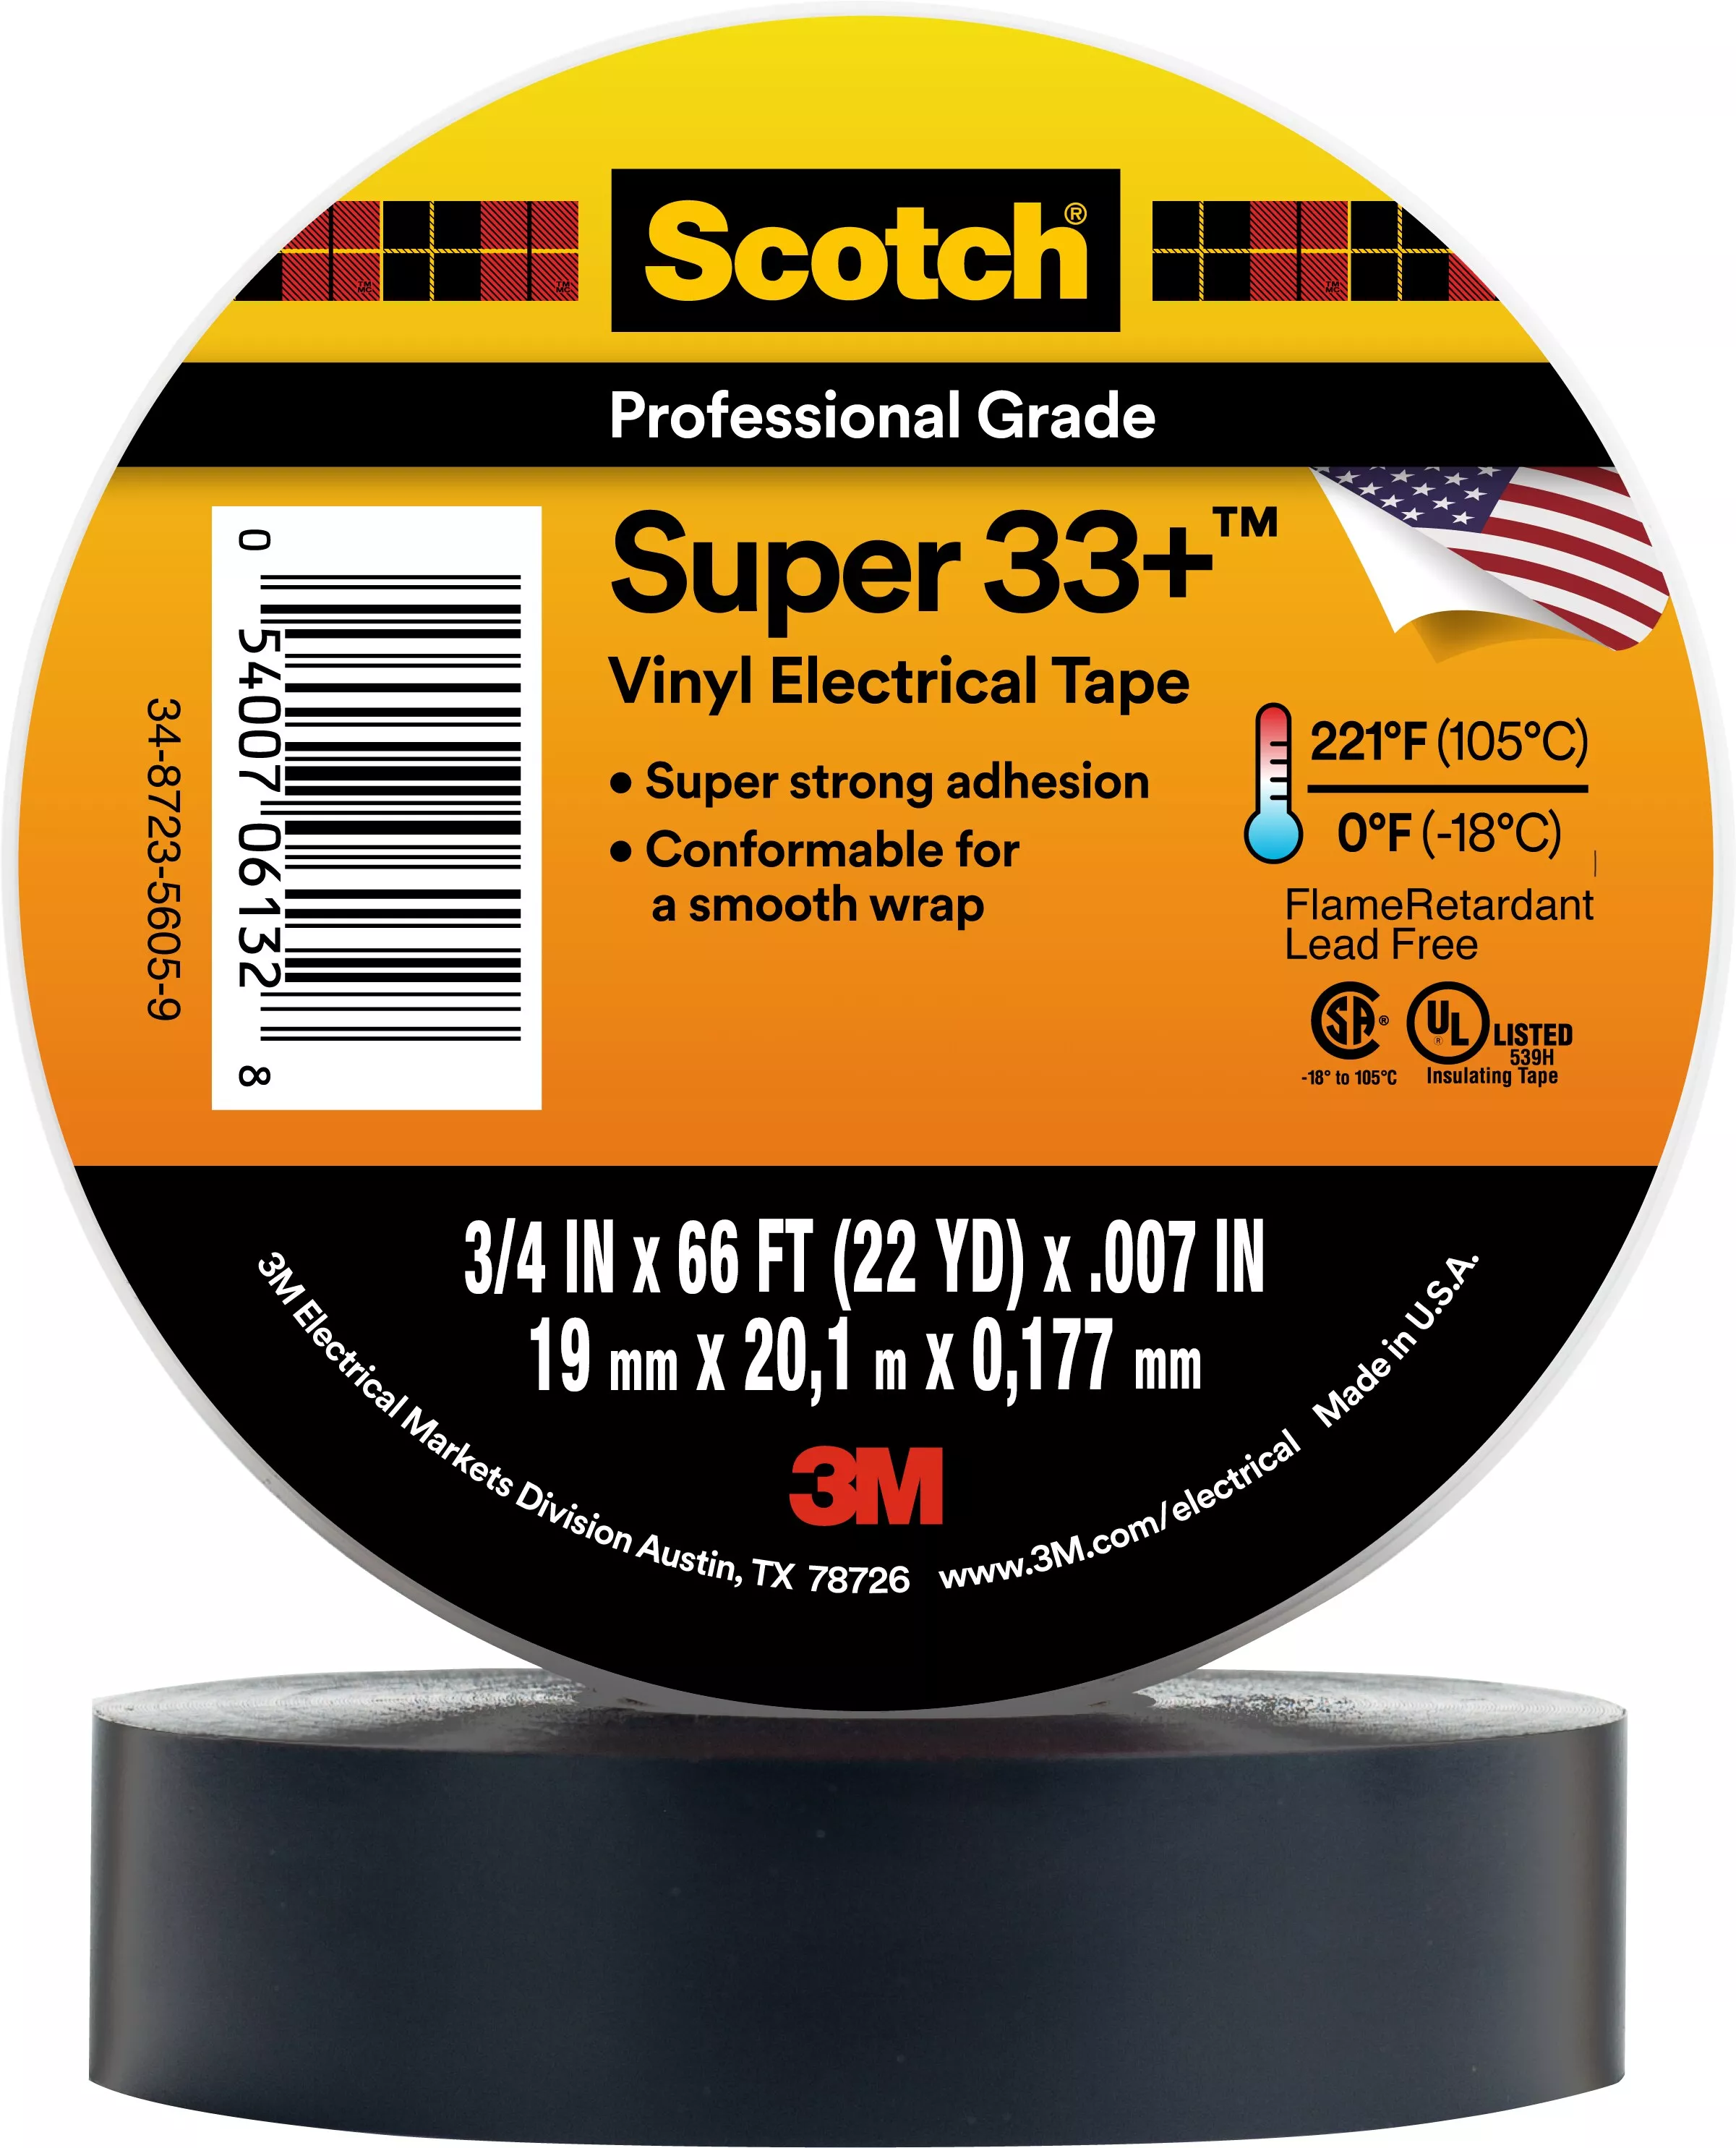 Scotch® Super 33+ Vinyl Electrical Tape, 3/4 in x 66 ft, 1-1/2 in Core,
Black, 100 rolls/Case